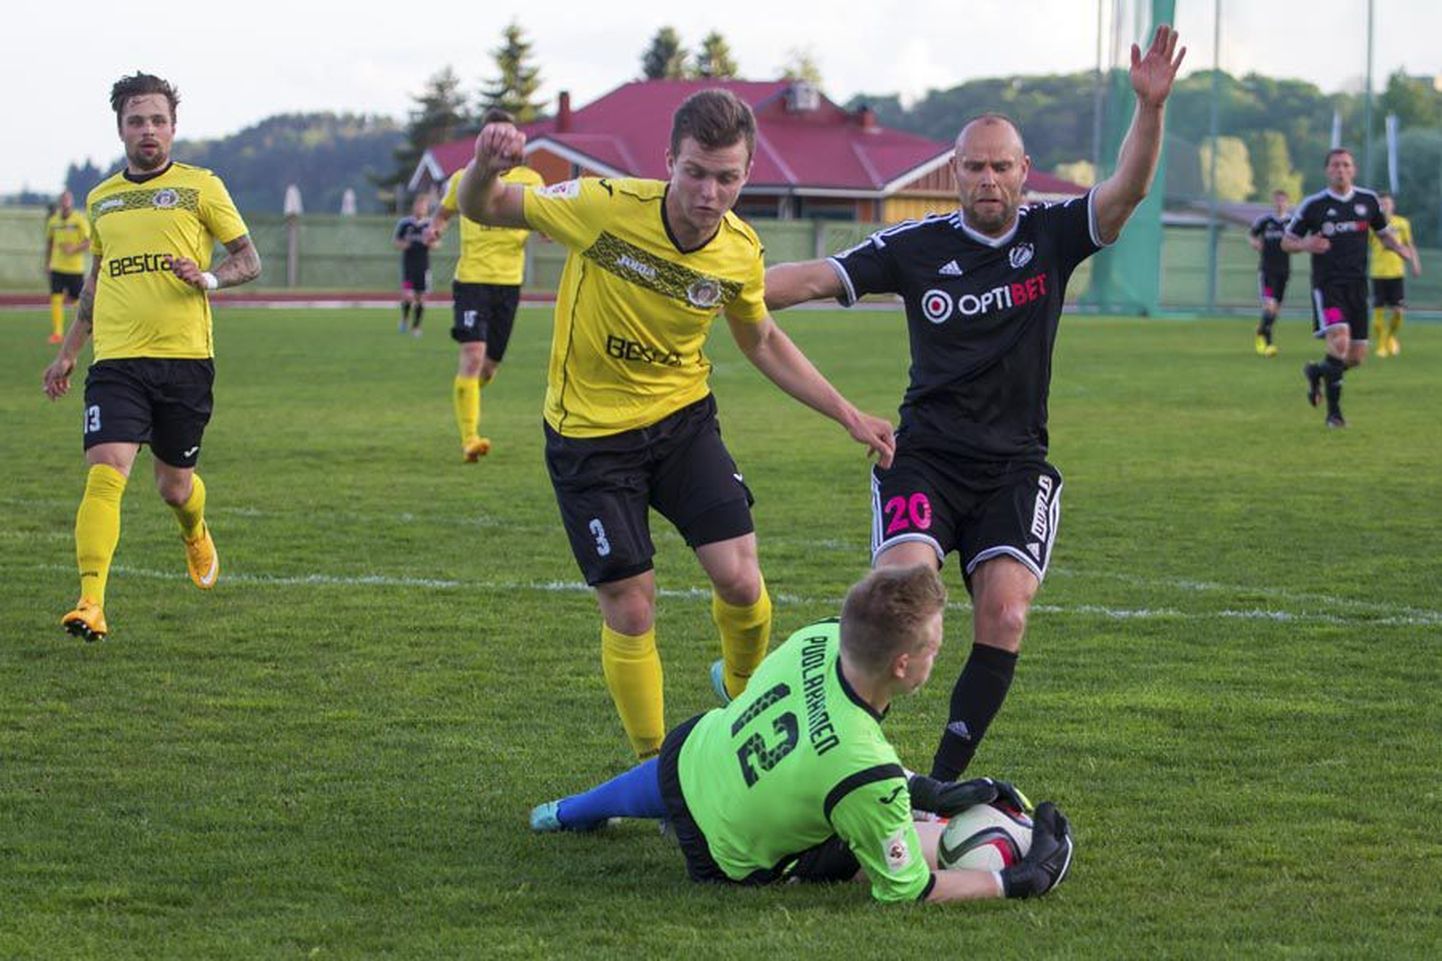 Esmaspäevast kuulub viljandlane Oskar Berggren (nr 3) FC Flora klubi nimekirja. Esialgu liitub 17-aastane mängumees Tallinna klubi duubelmeeskonnaga. Pilt on tehtud 26. juunil Viljandis peetud kohtumisel, kui Tulevik alistas Nõmme Kalju.